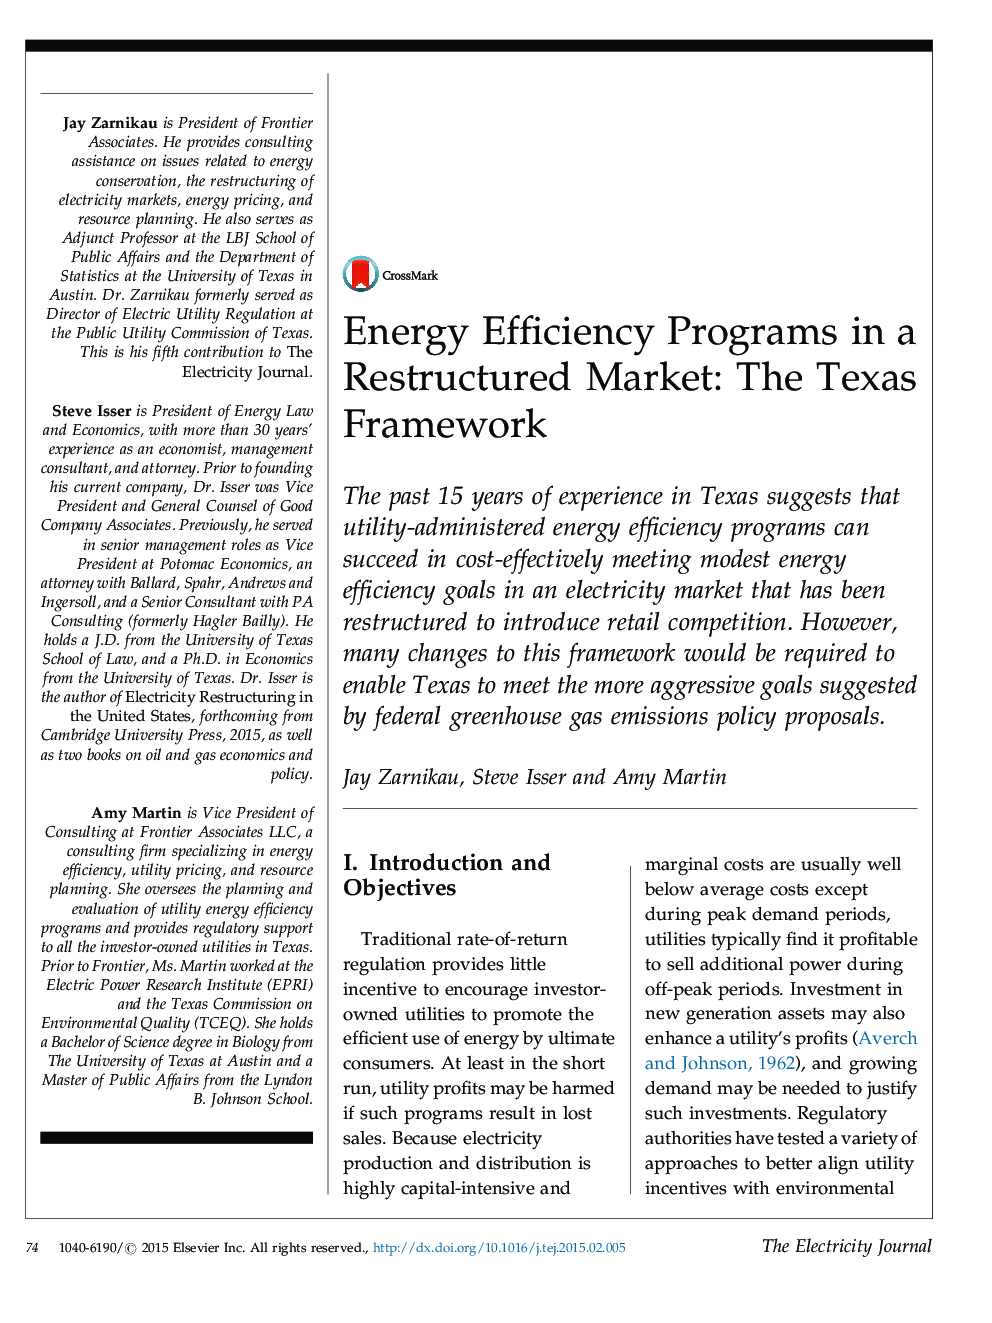 برنامه های بهره وری انرژی در یک بازار بازسازی شده: چارچوب تگزاس 